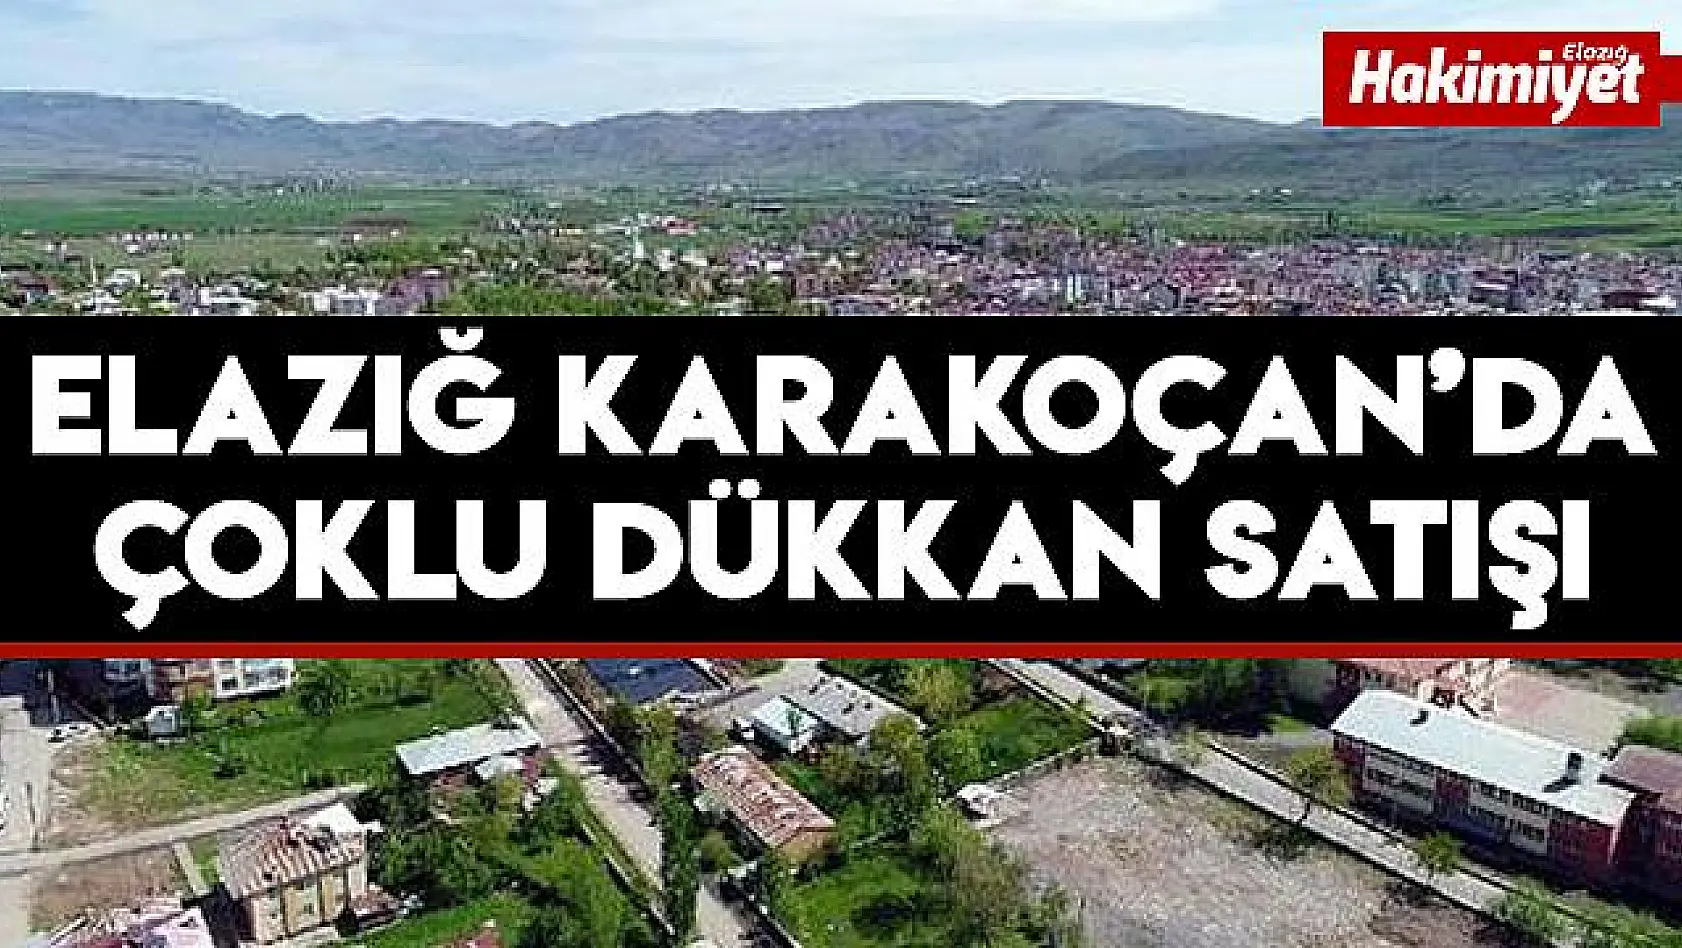 Elazığ Karakoçan'da Çoklu Dükkan Satışı